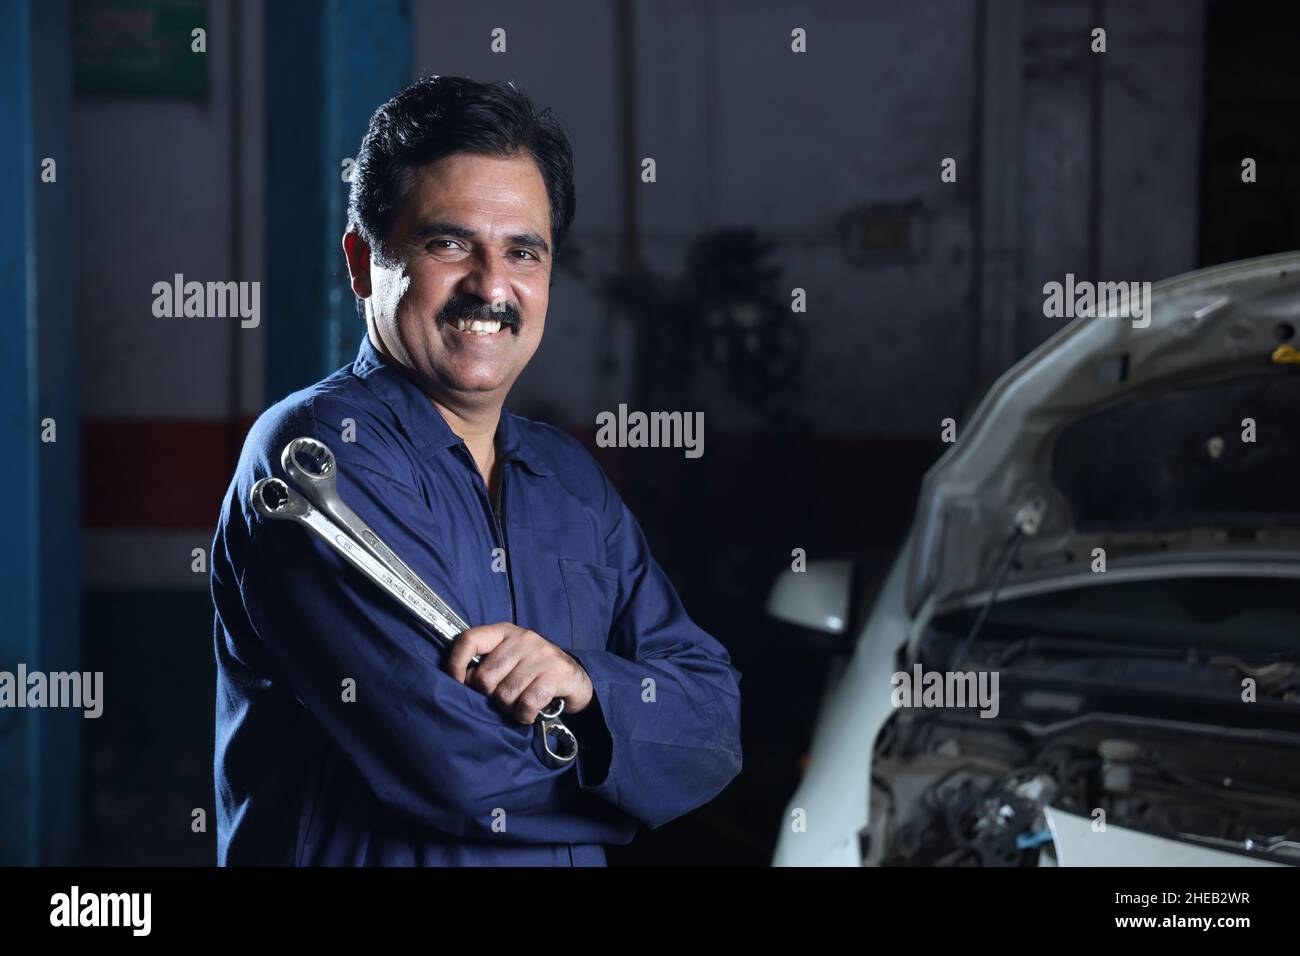 Portrait eines glücklichen indischen Automechanikers, der lächelt und die Werkzeuge für die Reparatur eines Autos in der Hand hält, während er in einer Werkstatt arbeitet Stockfoto